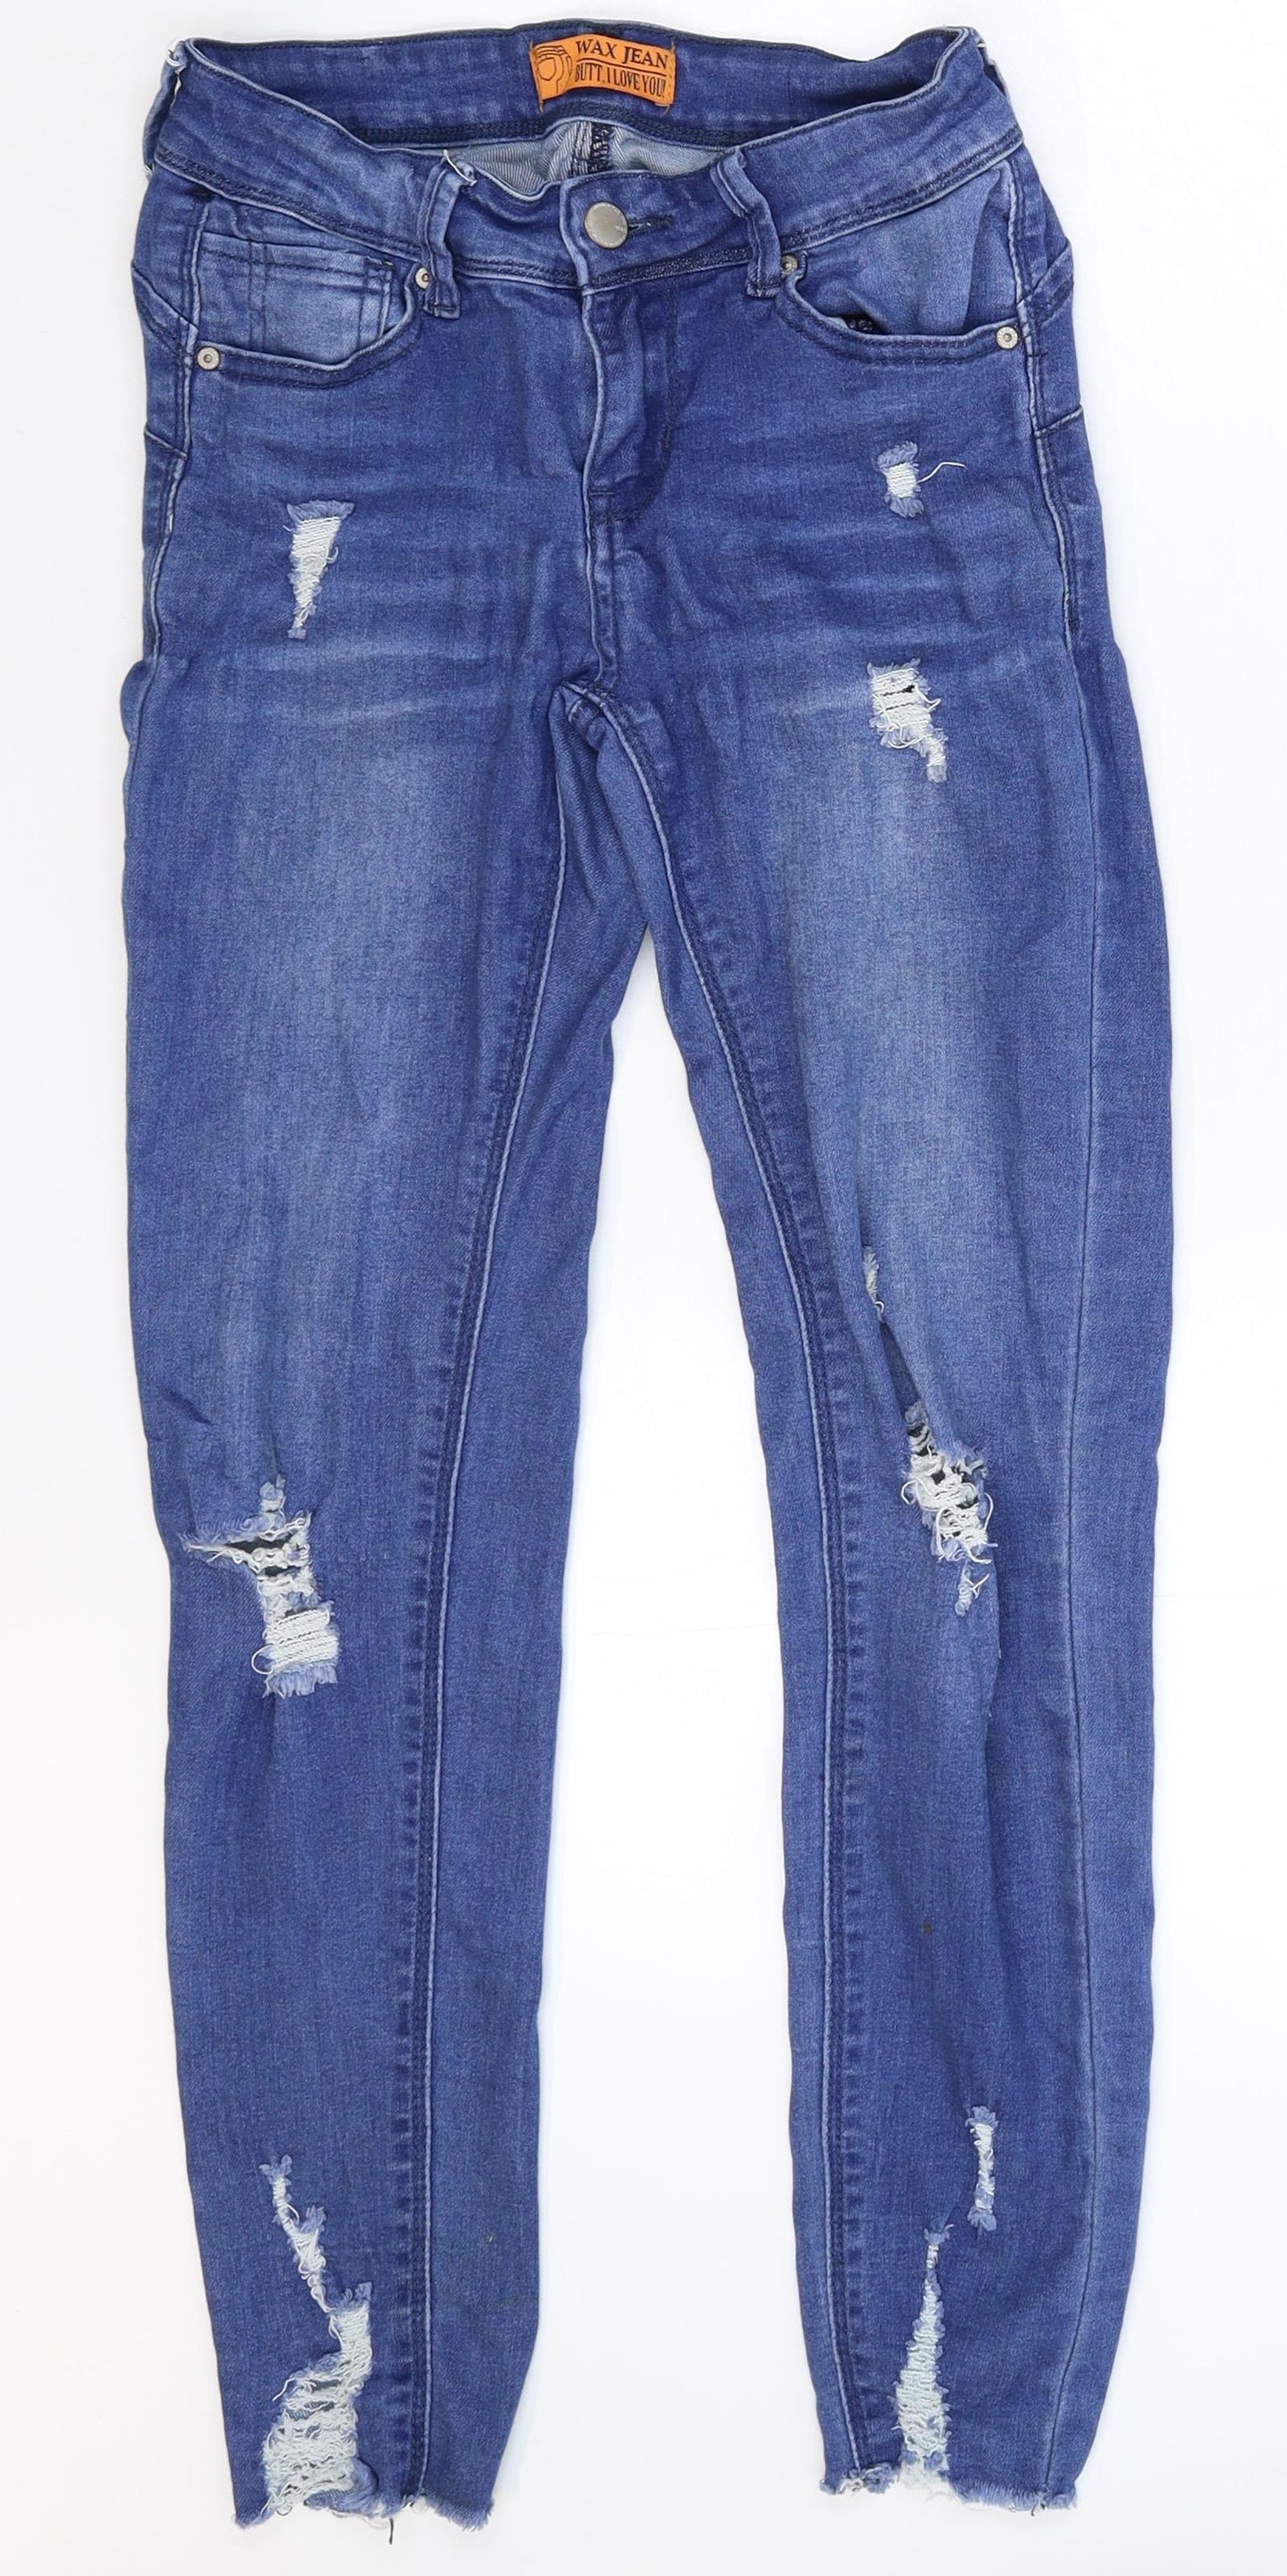 WAX JEAN Womens Blue  Denim Jegging Jeans Size 28 in L25 in